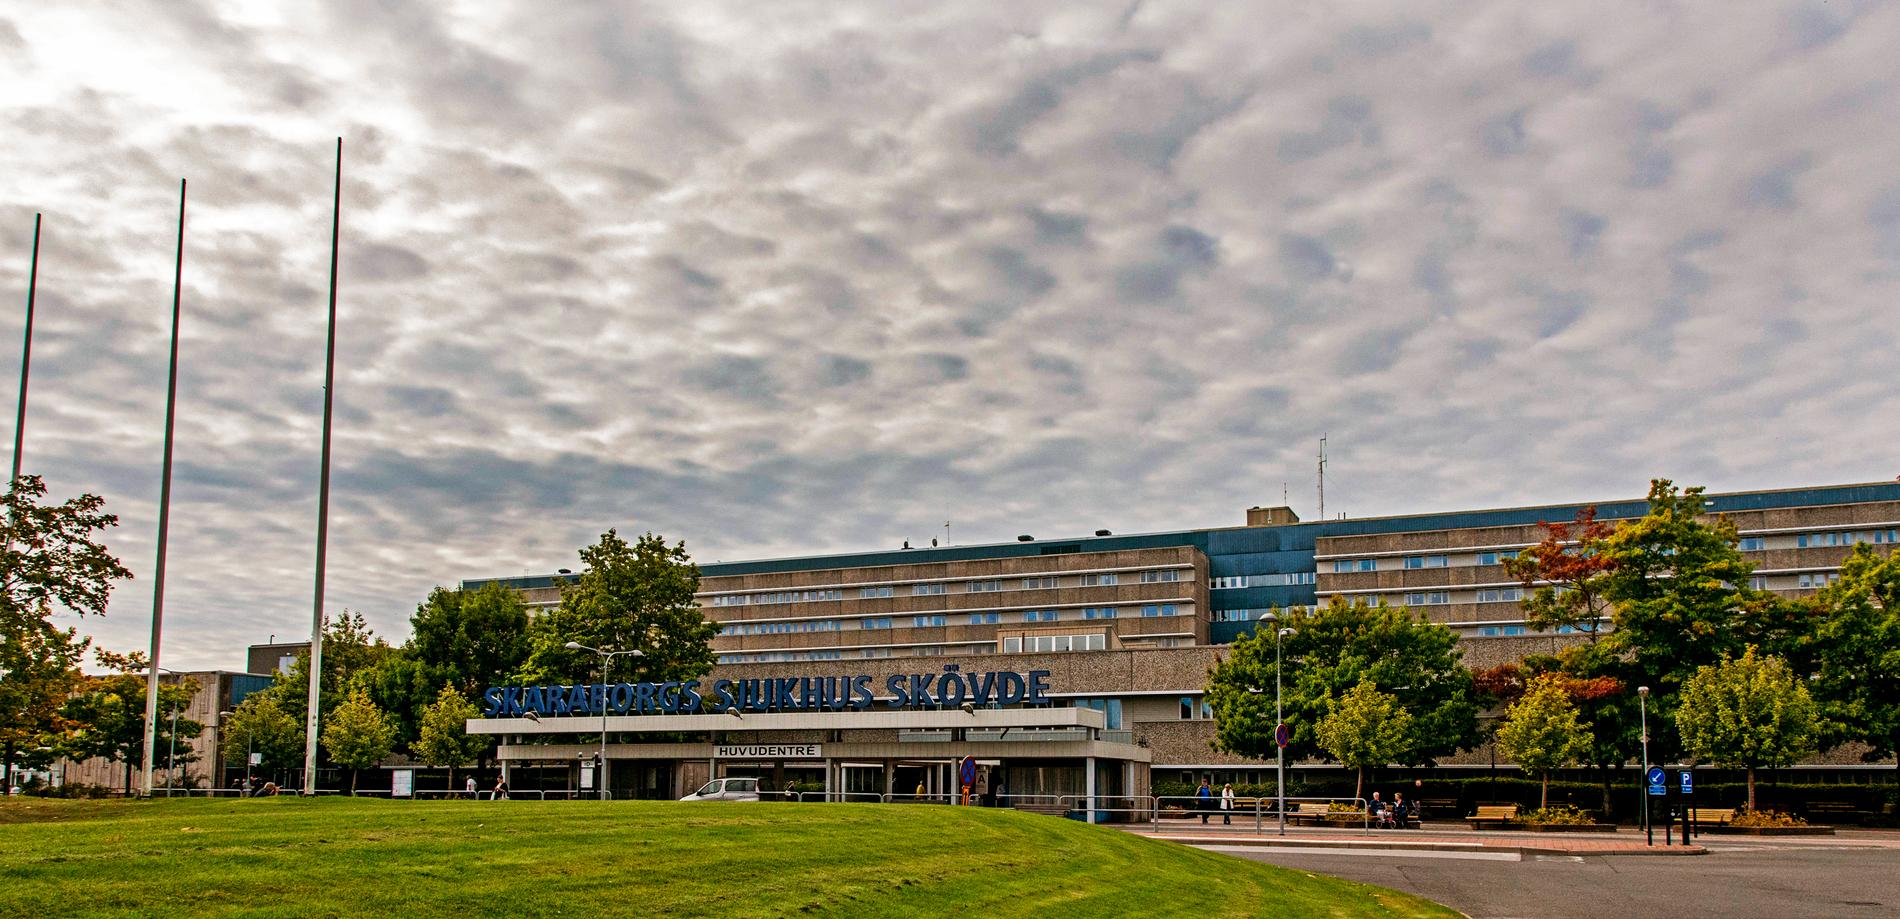 Skaraborgs sjukhus i Skövde. Arkivbild.